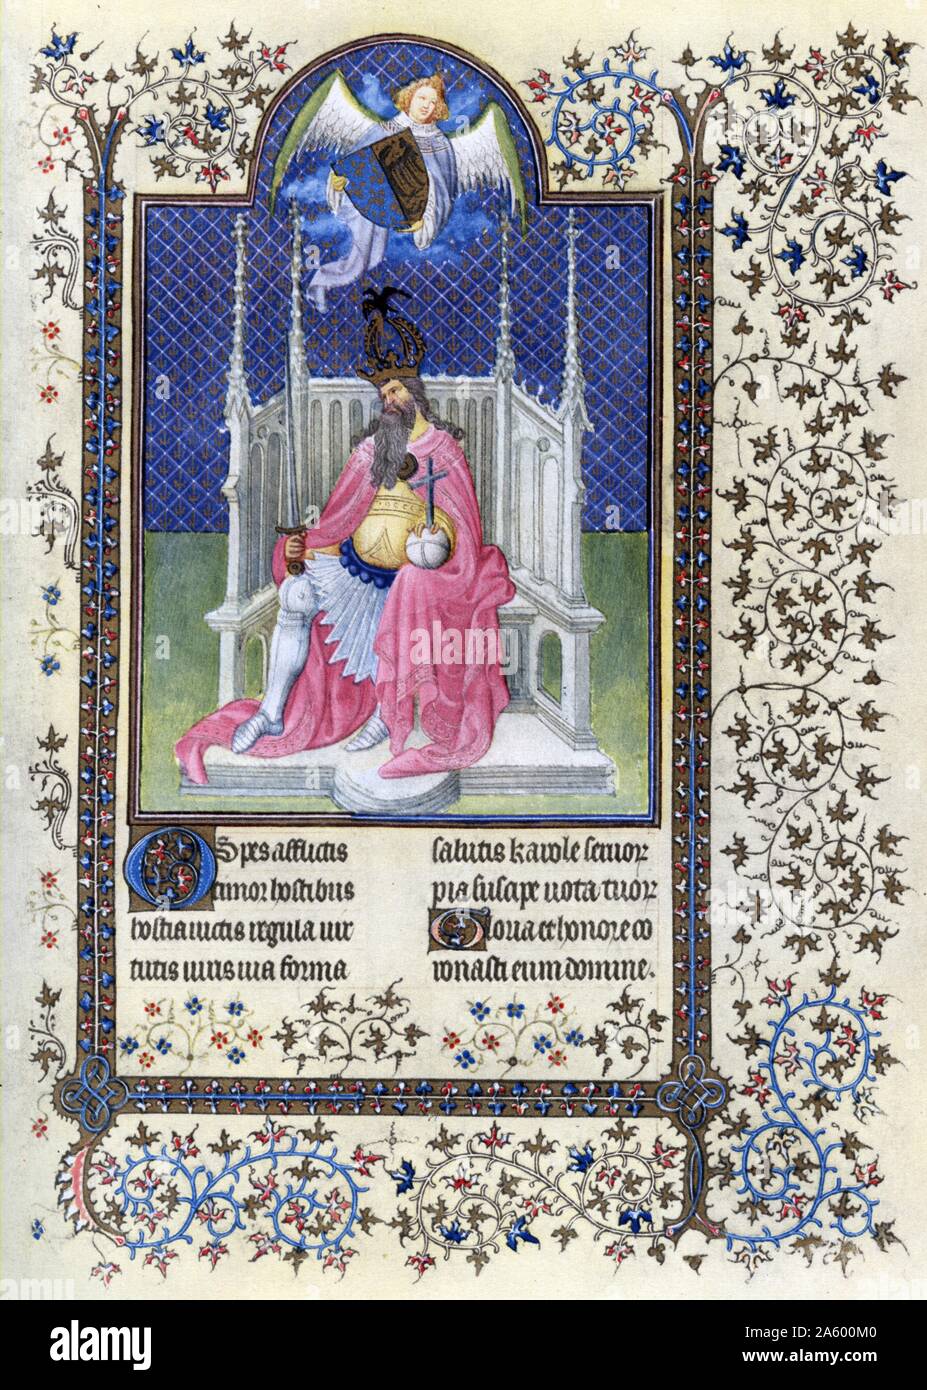 Beleuchtung mit Saint Karl der große vom Belles Heures des Jean de France, Duc de Berry (schöne Stunden) eine frühe 15. Jahrhundert beleuchtet Manuskript-Buch von Stunden. Vom 15. Jahrhundert Stockfoto